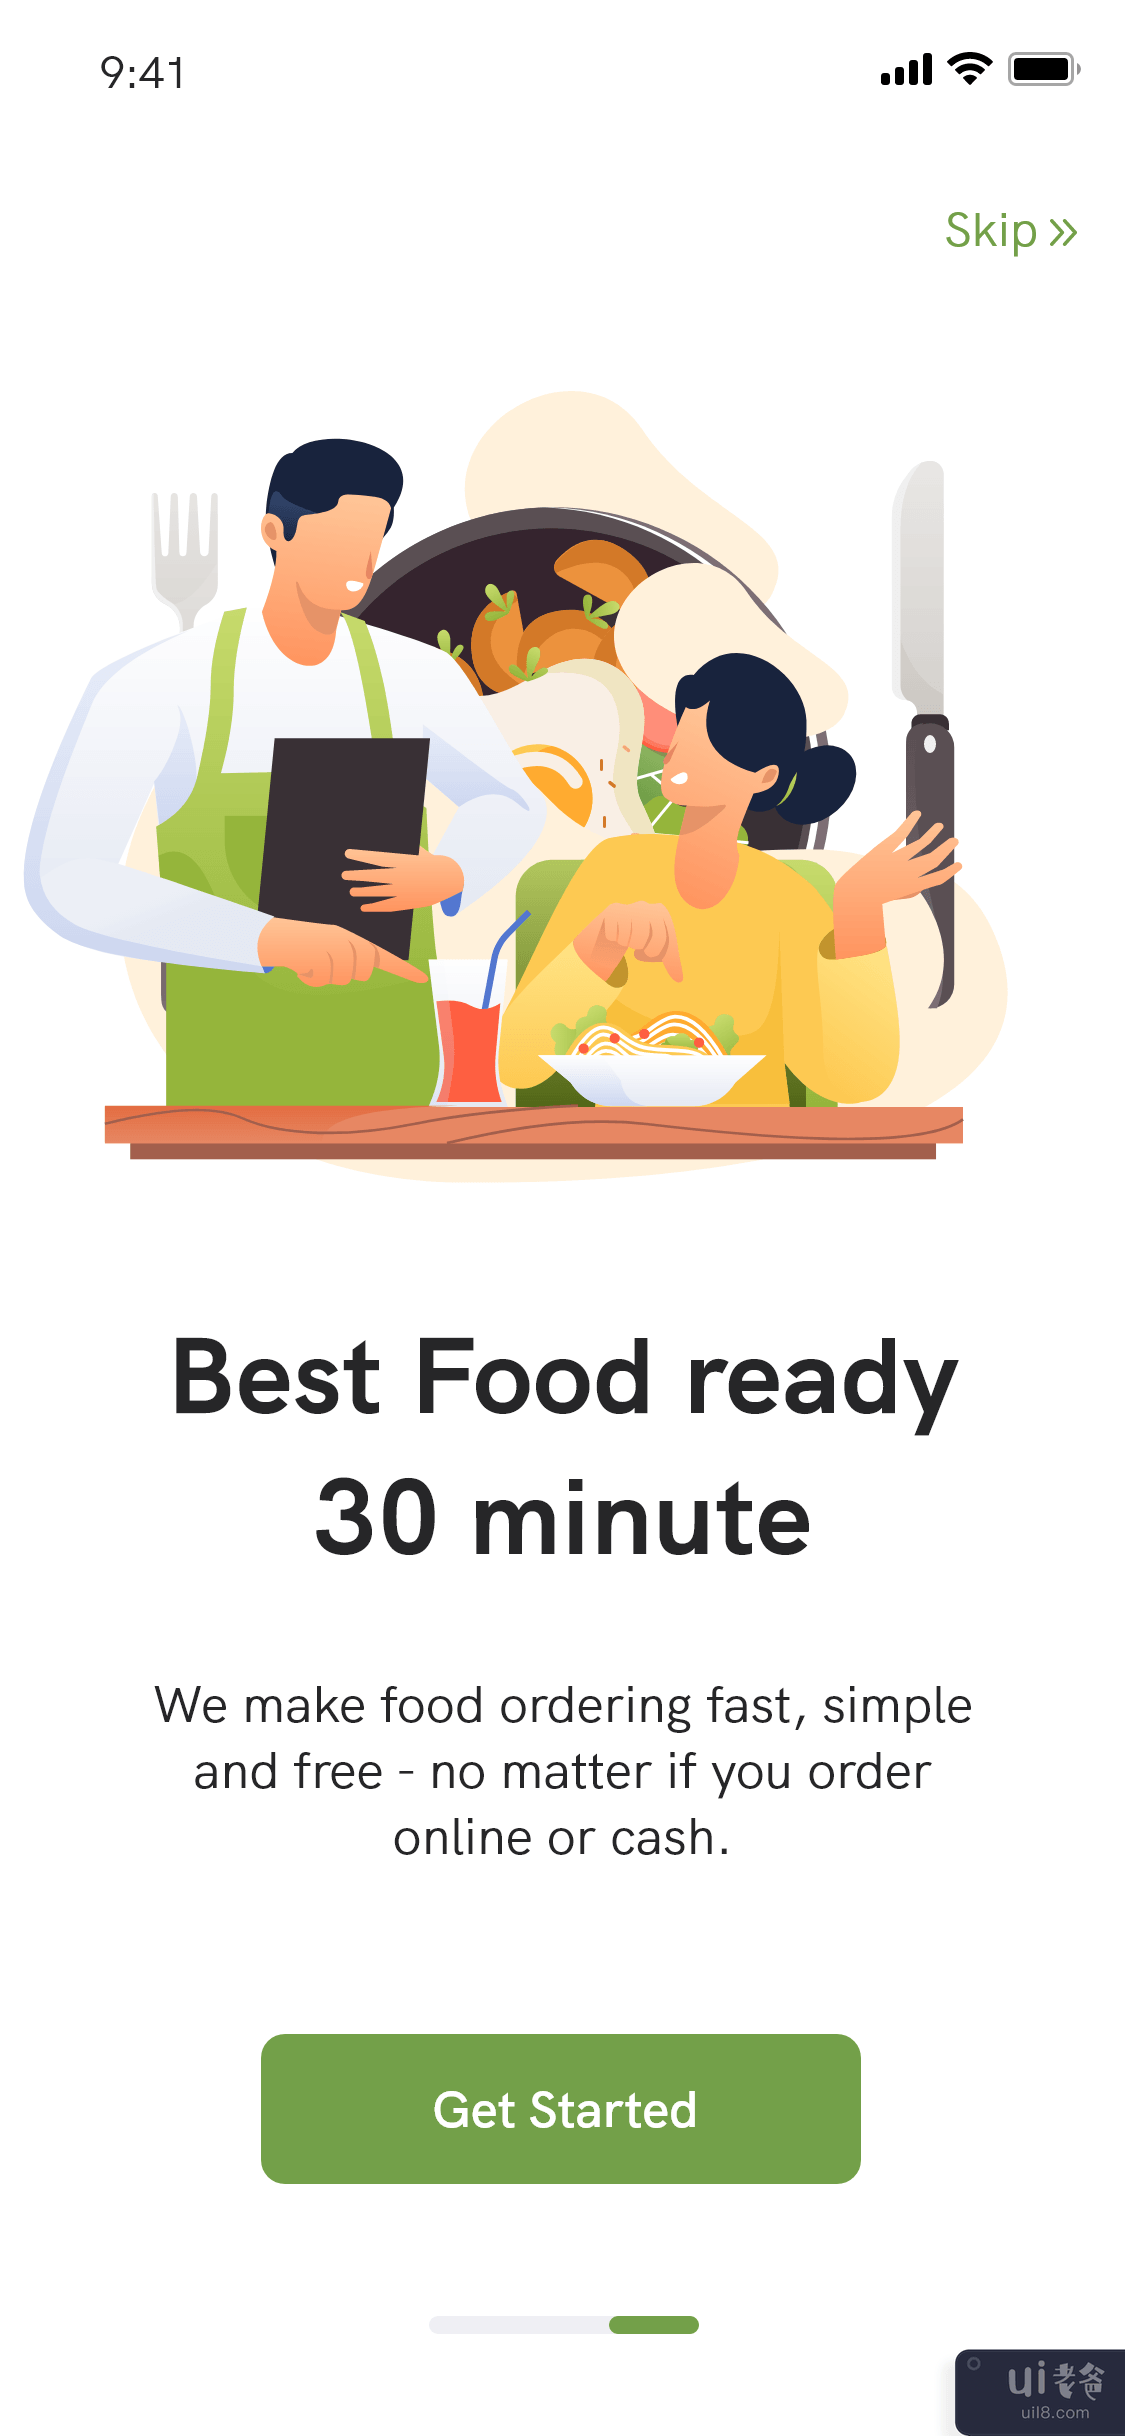 送餐应用程序 - 餐厅查找器应用程序(Food Delivery app - Restaurant Finder App)插图2